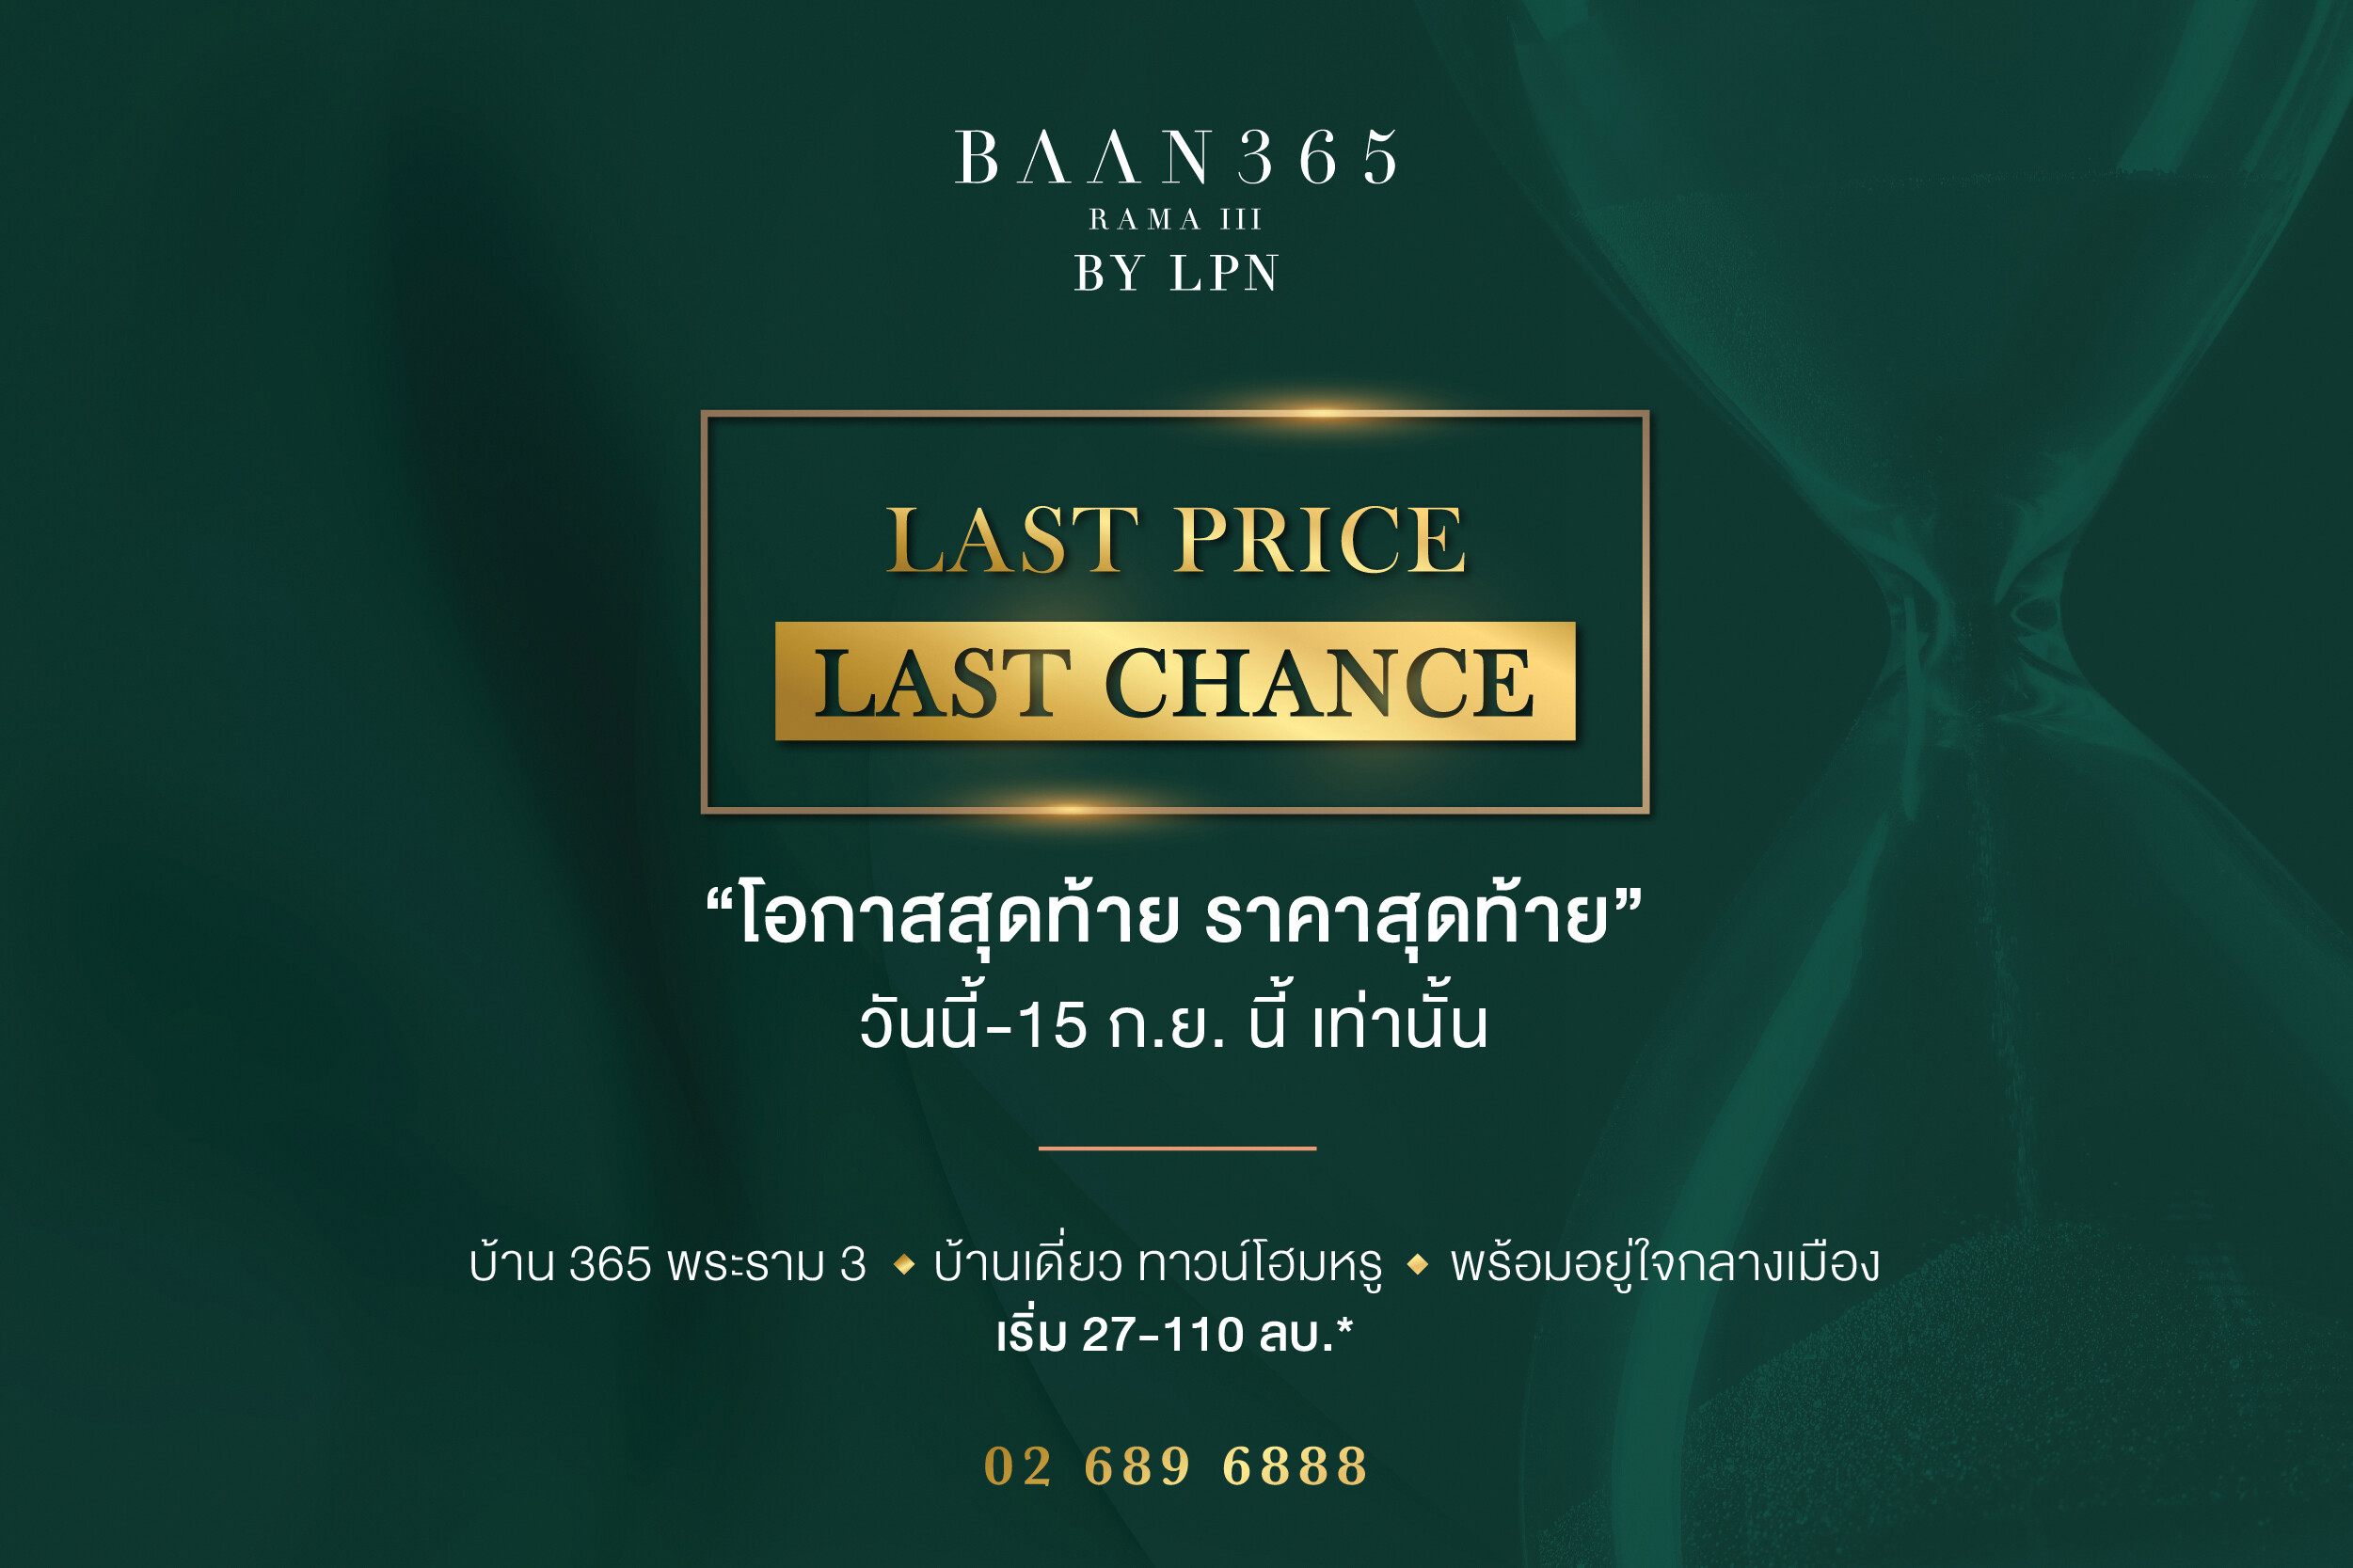 BAAN 365 RAMA III  By LPN เปิดตัวแคมเปญ "LAST PRICE LAST CHANCE"  บ้านหรู พร้อมอยู่ใจกลางเมือง "โอกาสสุดท้าย ราคาสุดท้าย" วันนี้ -15 ก.ย.นี้